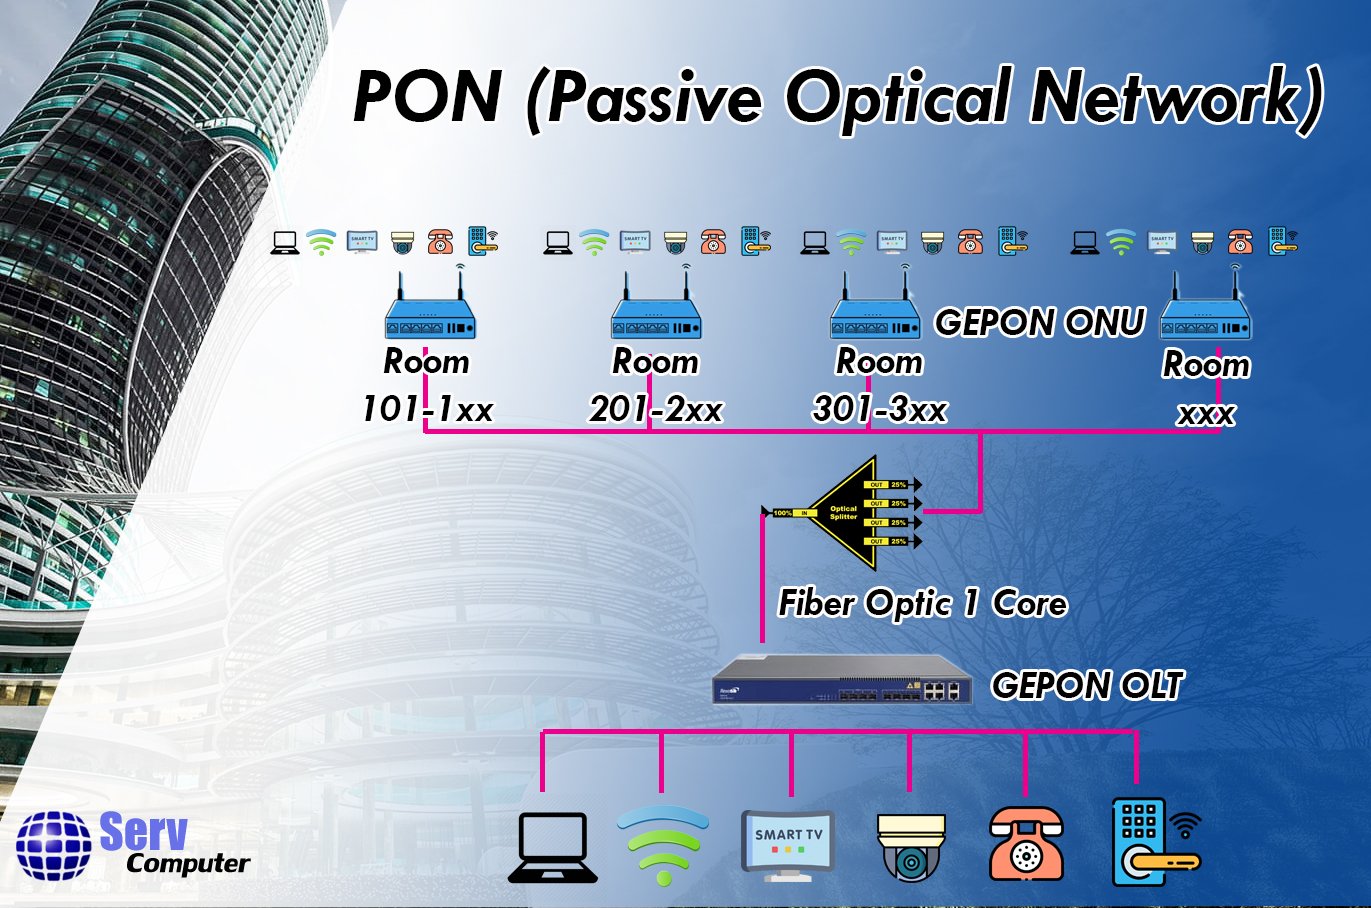 มารู้จักเครือข่าย PON (Passive Optical Network)